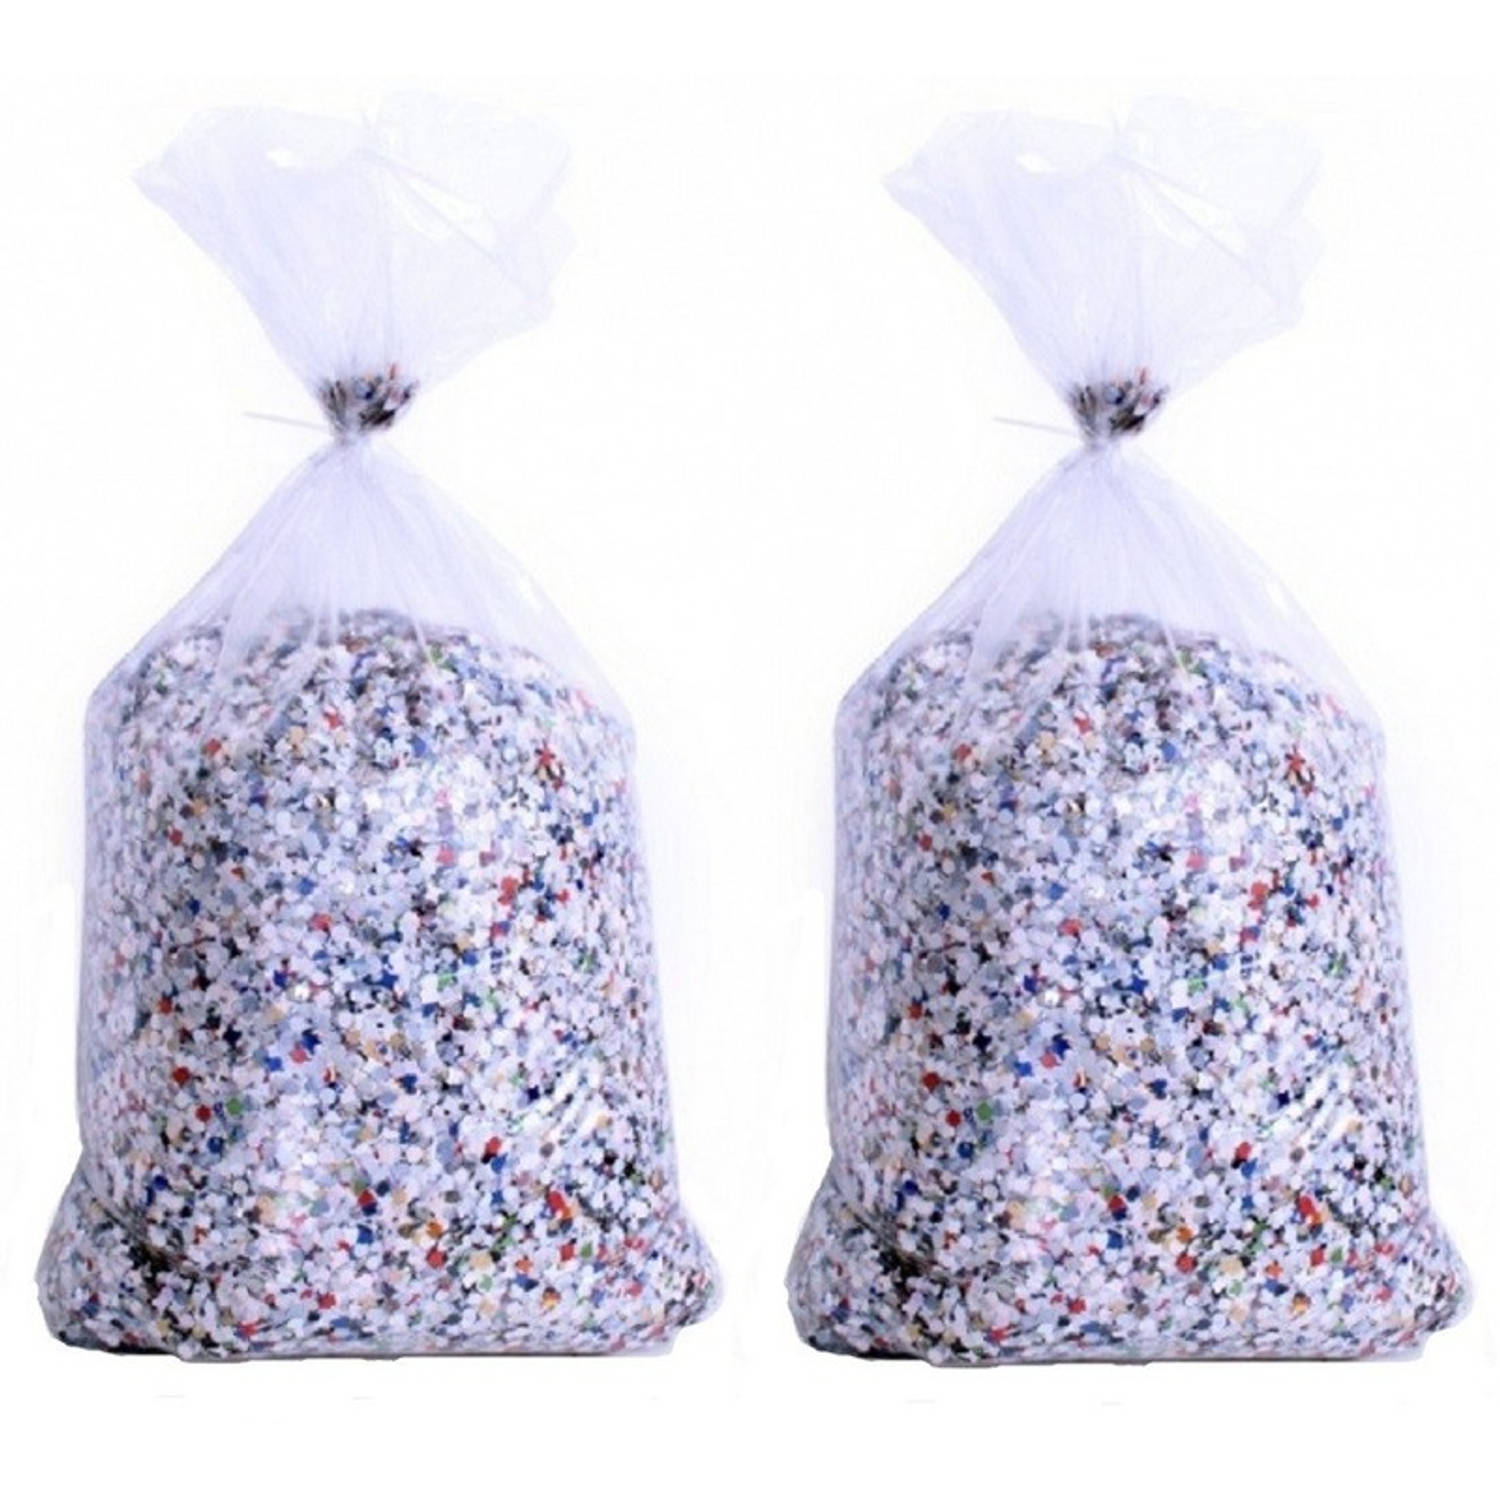 Stal zelf omverwerping 10 kilo feest confetti - Confetti | Blokker